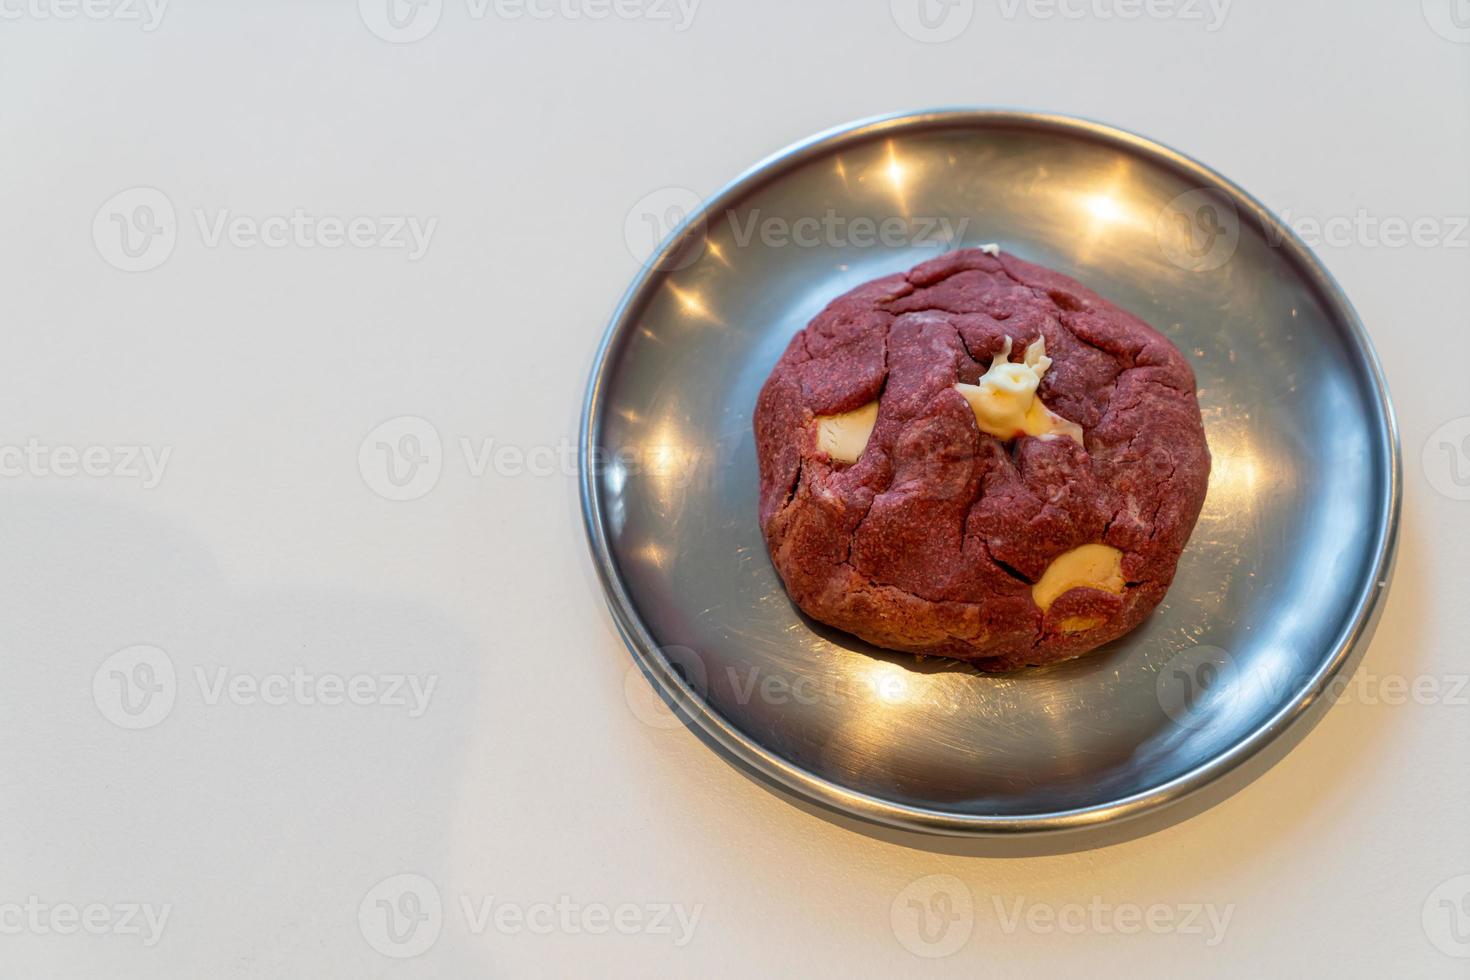 red velvet koekje met macadamia noot op bord foto